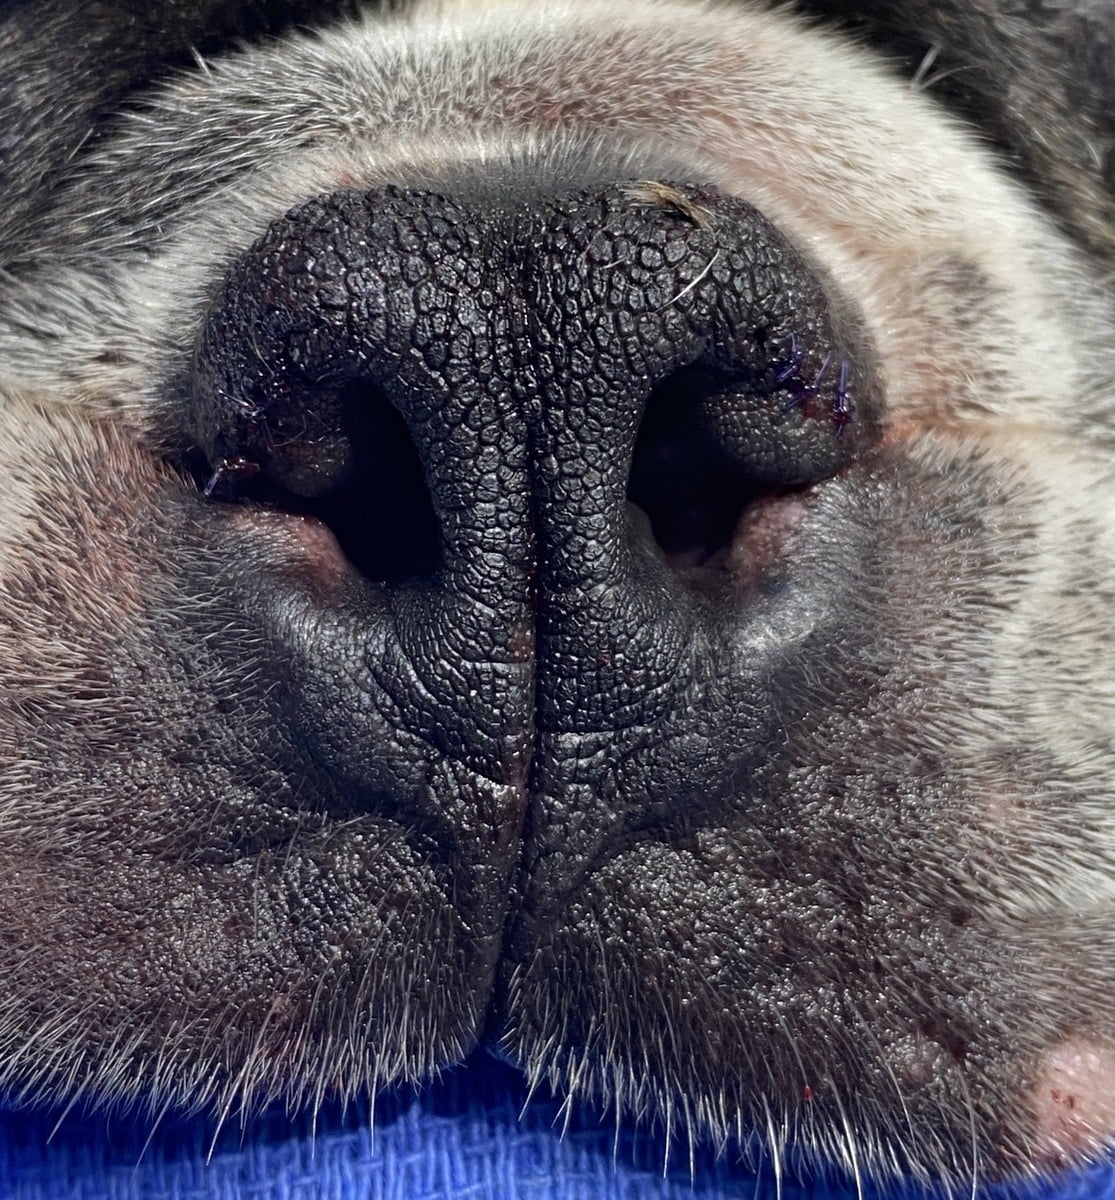 Dog Nose After Boas Surgery Bentons Road Vet